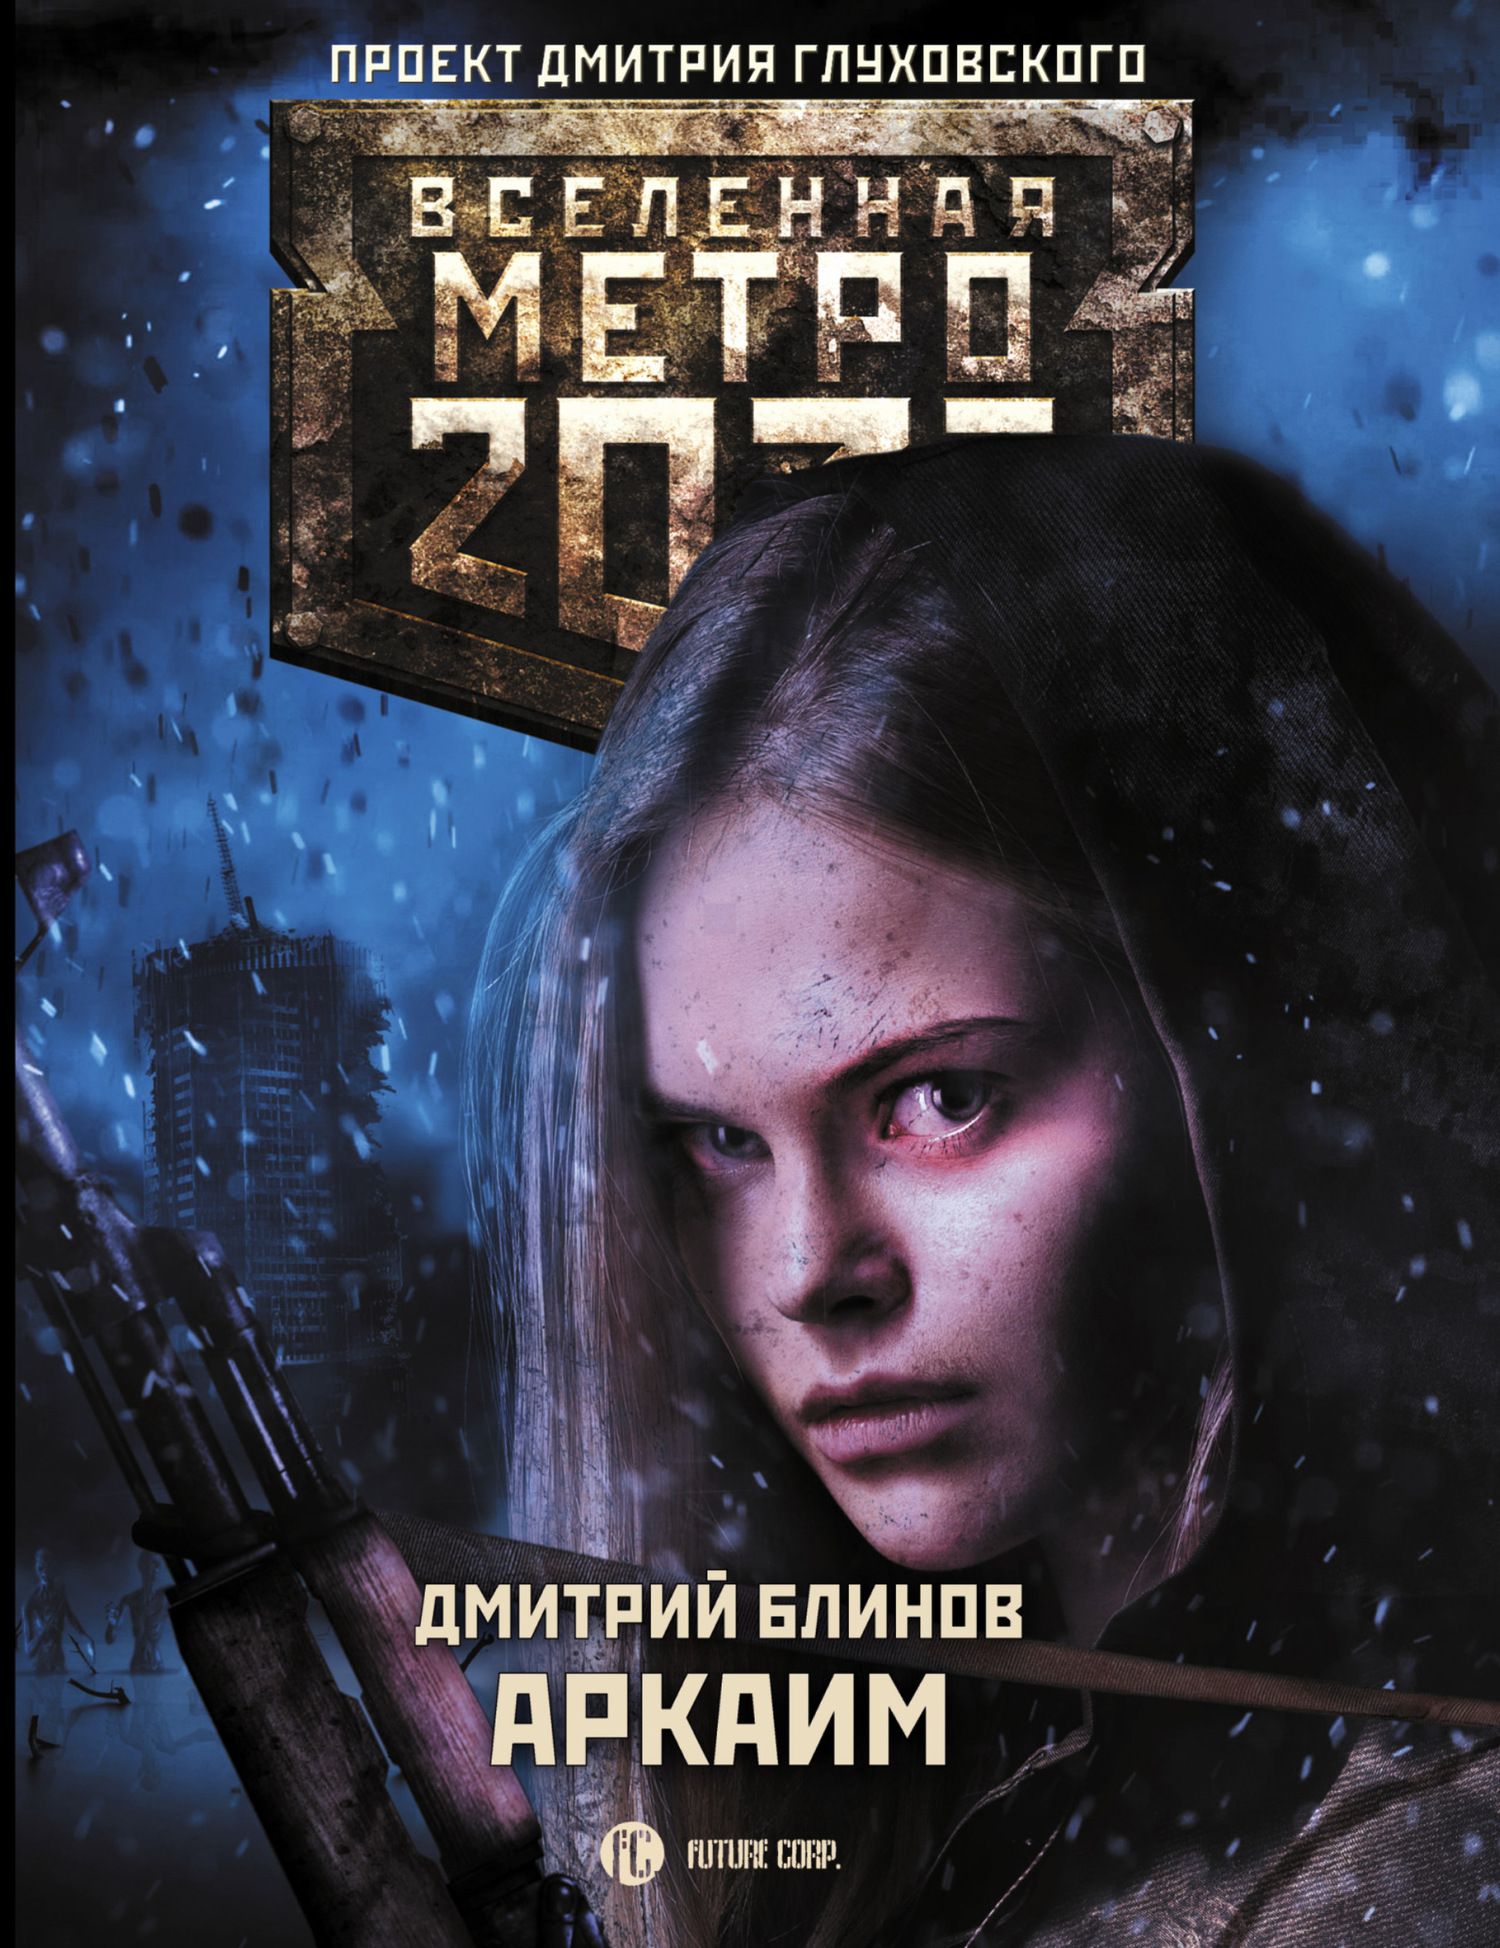 Блинов Дмитрий - Метро 2033: Аркаим скачать бесплатно